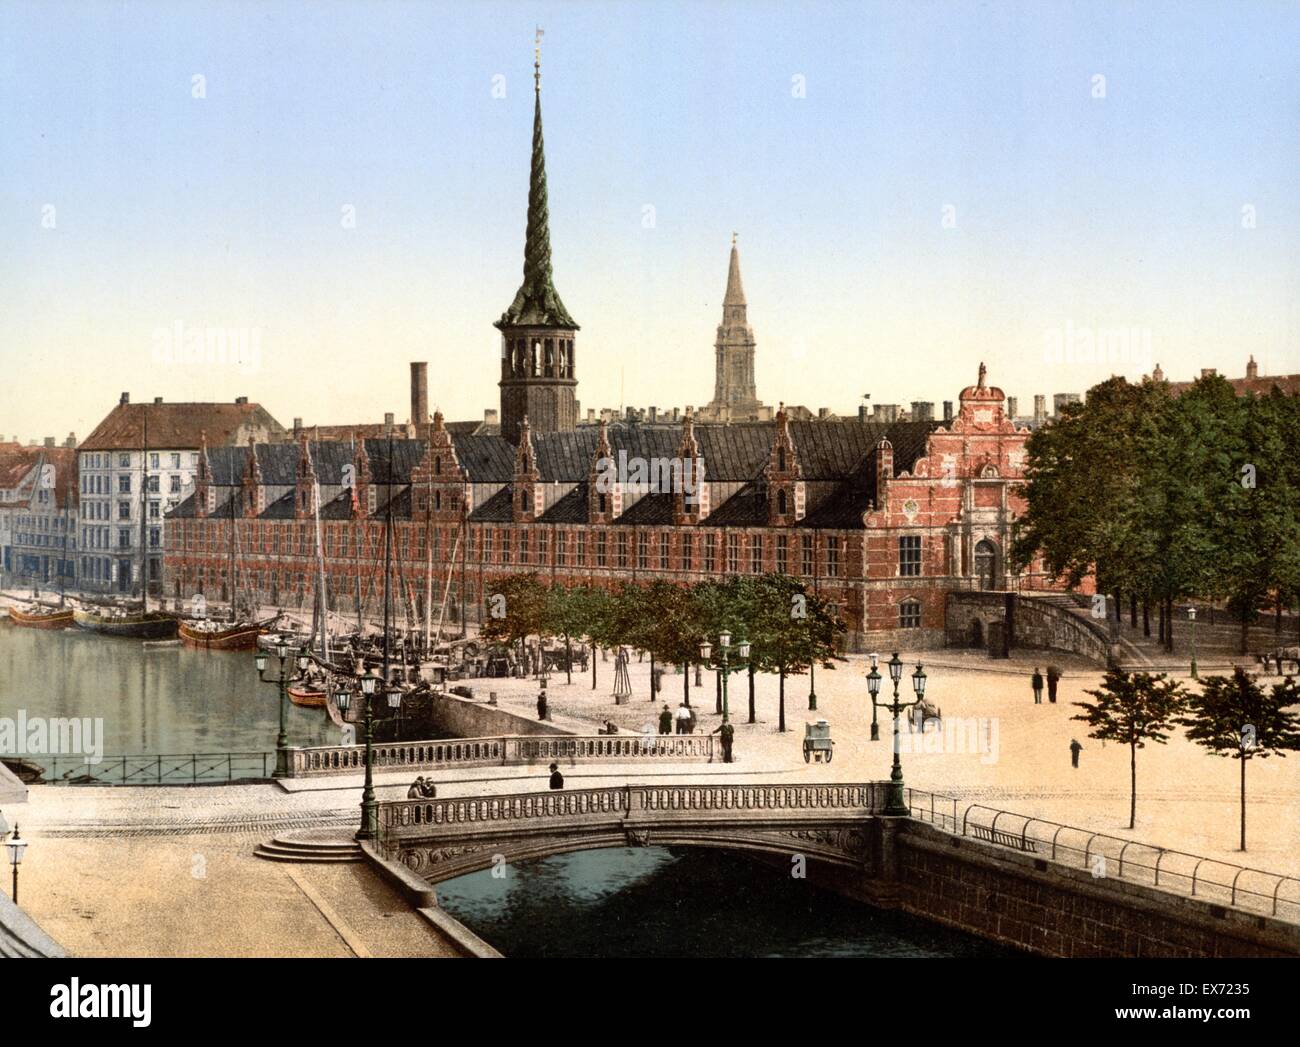 Der Exchange-Halle, Kopenhagen, Dänemark 1900. Eines der ältesten Gebäude in Kopenhagen, die alte Börse liegt auf der Insel Slotsholmen und 1619-1640 von König Christian IV. (1577-1648 - reg. Dänemark und Norwegen 1588-1648) erbaut. Stockfoto